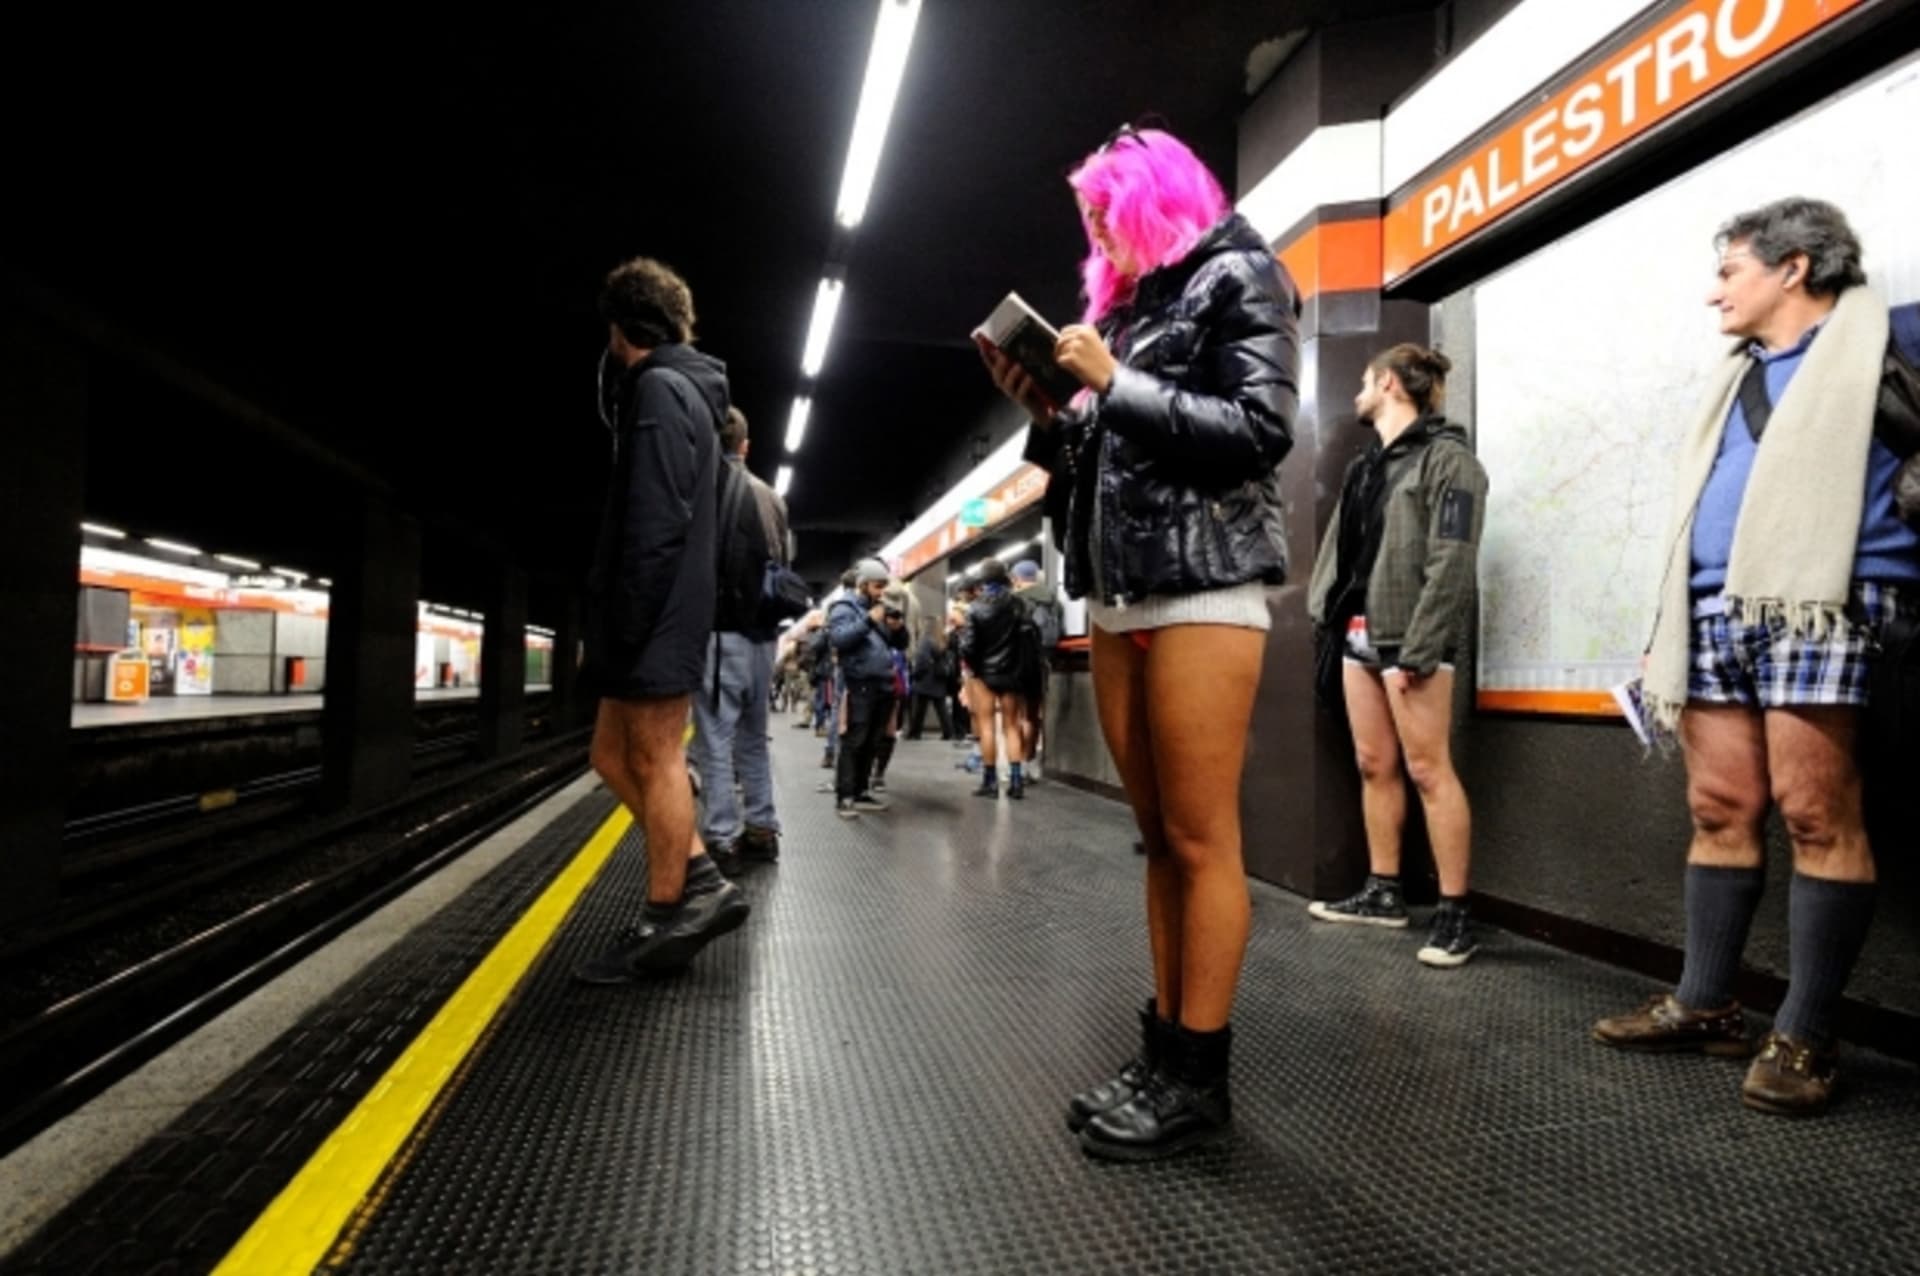 Podzemky po celém světě zaplavili lidé s obnaženými zadky...Jízda metrem bez kalhot. Takový název má akce, která vznikla v americkém New Yorku v roce 2002 a později získala celosvětový rozměr. Do metra bez kalhot a sukní vyrazili lidé v celé řadě měst.